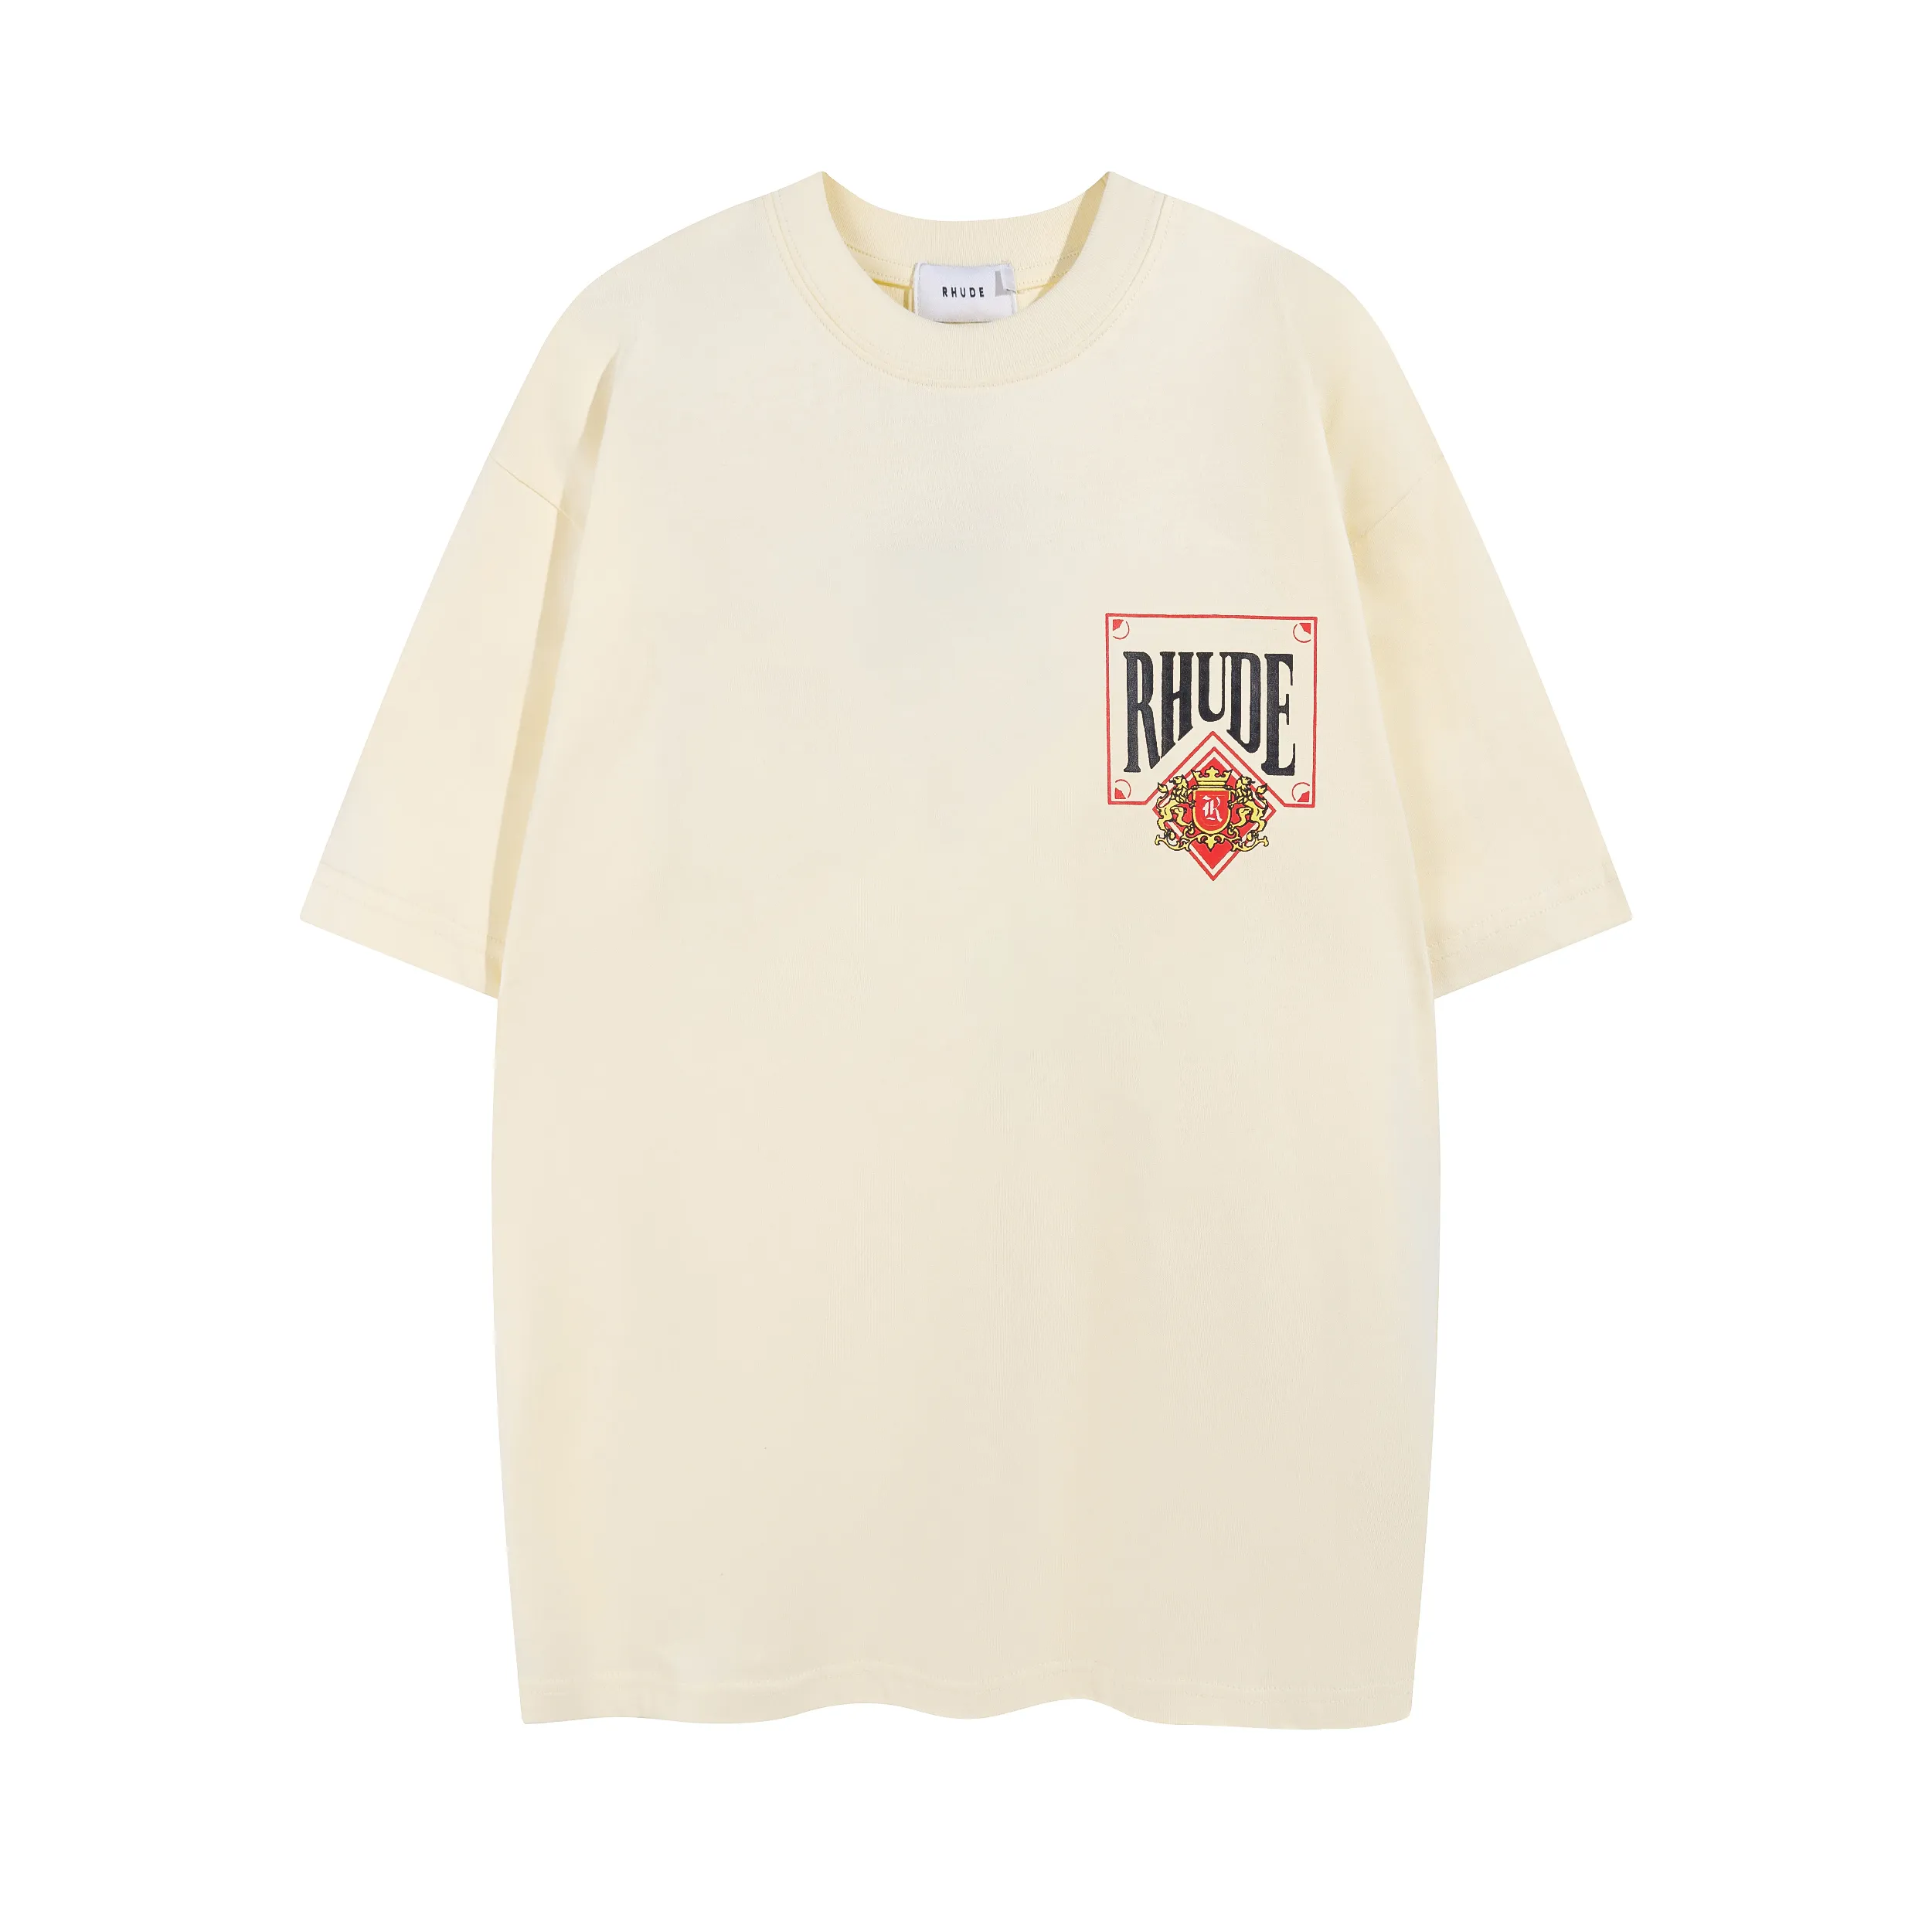 Nouveau Rhude Mens and Women T-shirt imprimé Graphic Tee Coton Cotton T-shirt Designer Top Short à manches Hip Hop Streetwear S-XL